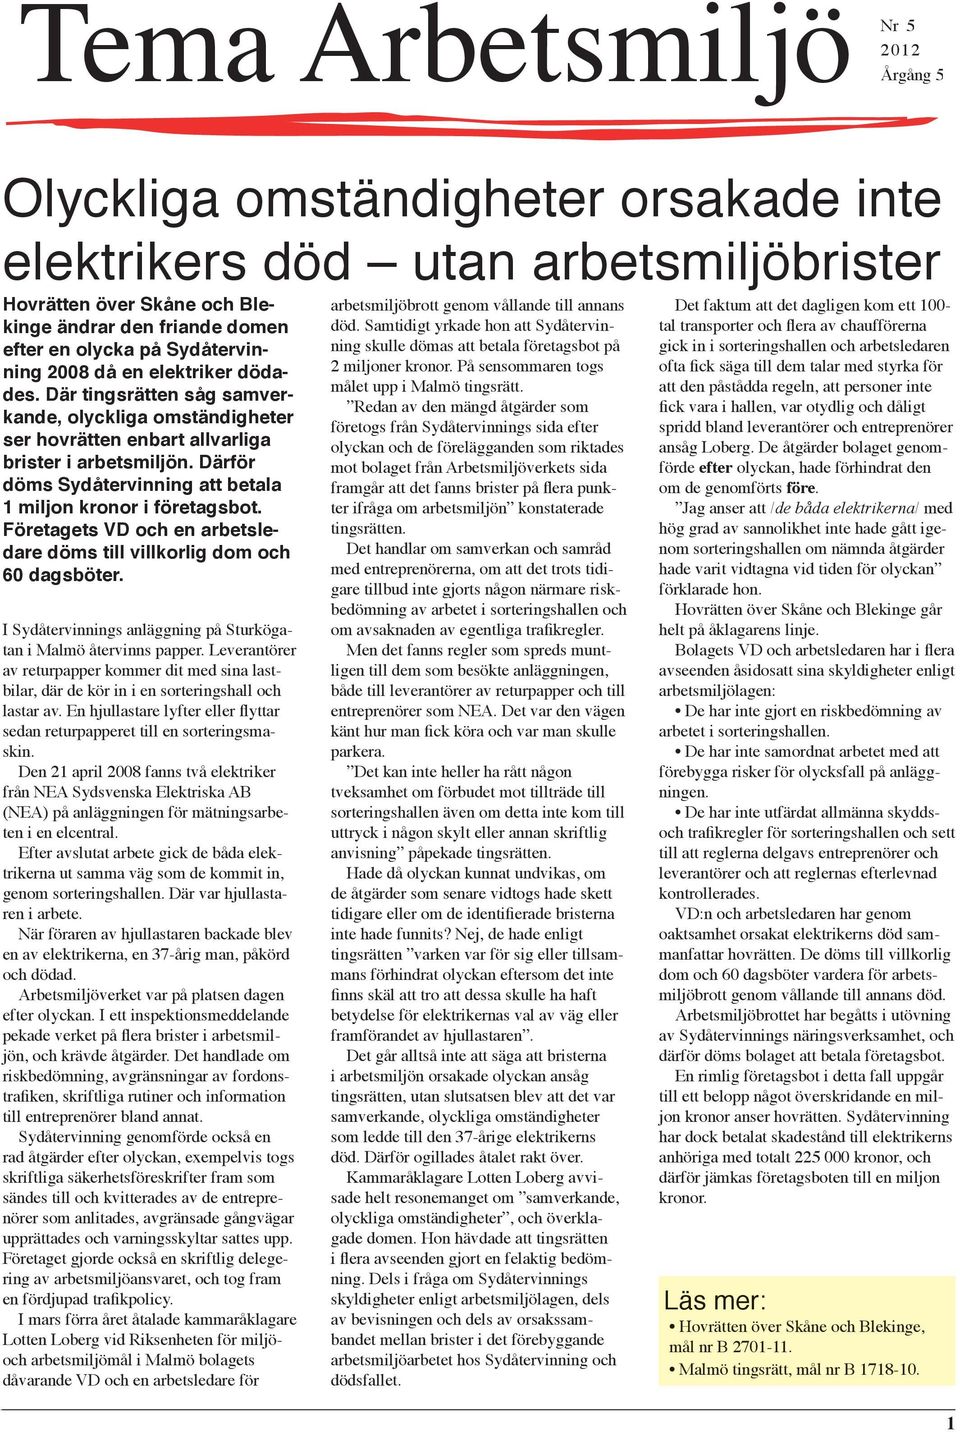 Därför döms Sydåtervinning att betala 1 miljon kronor i företagsbot. Företagets VD och en arbetsledare döms till villkorlig dom och 60 dagsböter.